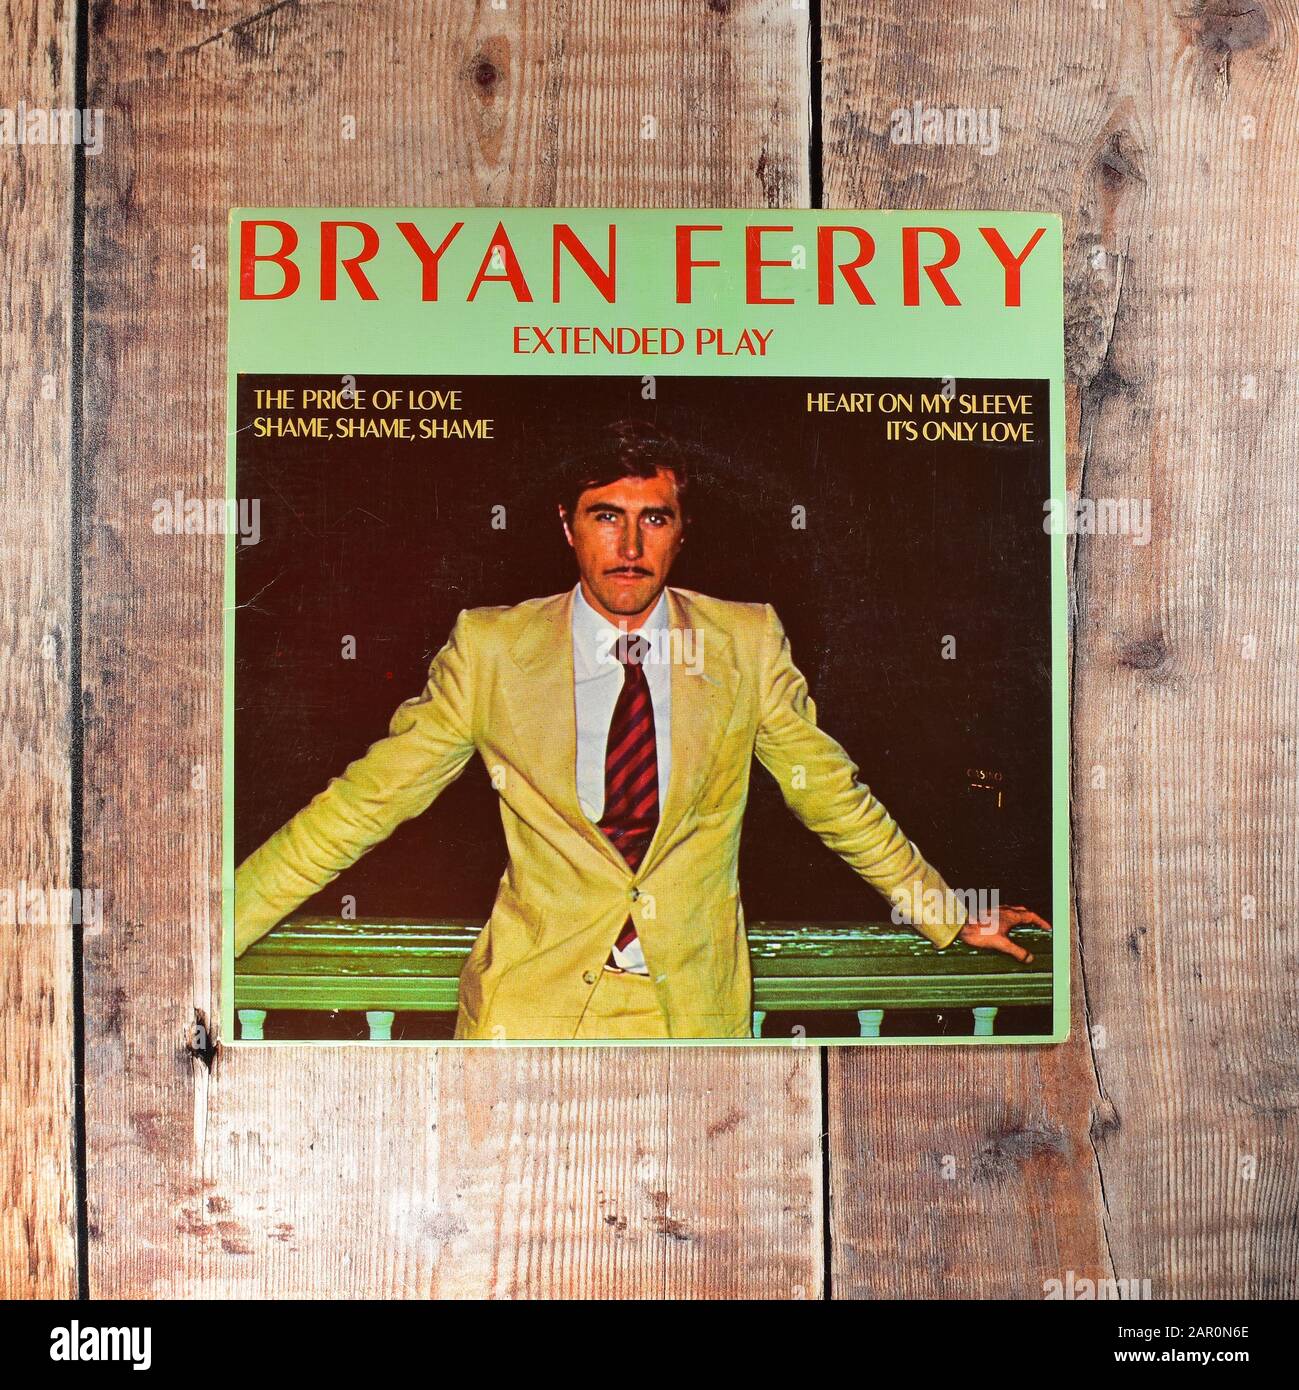 Bryan Ferry - Le prix de l'amour - Honte Honte - coeur sur ma manche - Son seul amour 7 pouces Banque D'Images